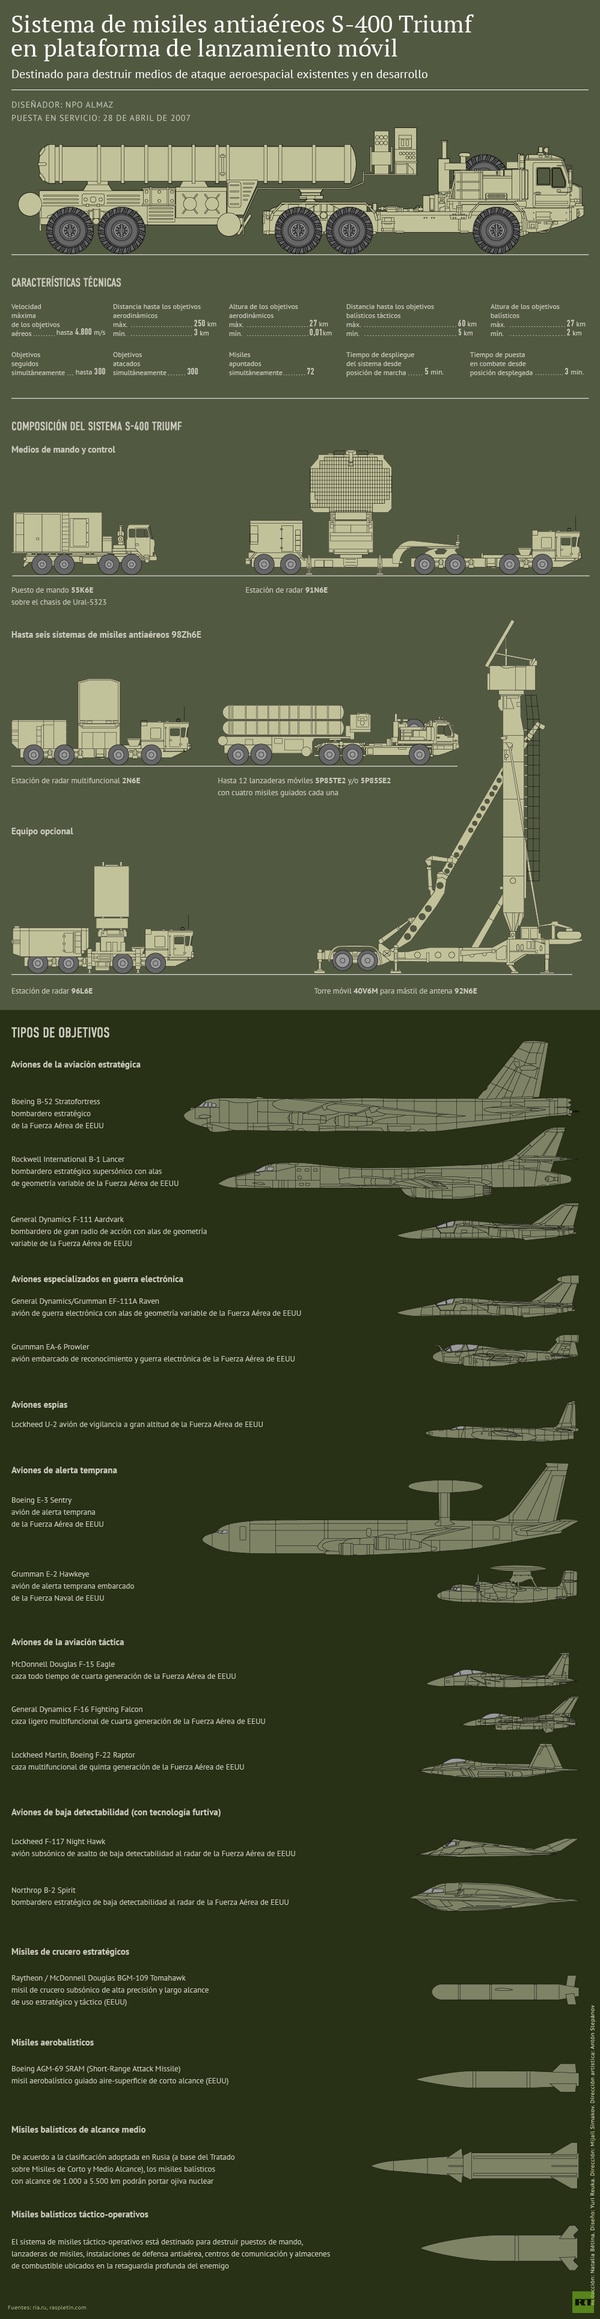 Infografía sobre las capacidades del S-400 publicada por Russia Today, cadena estatal rusa que promueve la postura del Kremlin en el extranjero (RT)